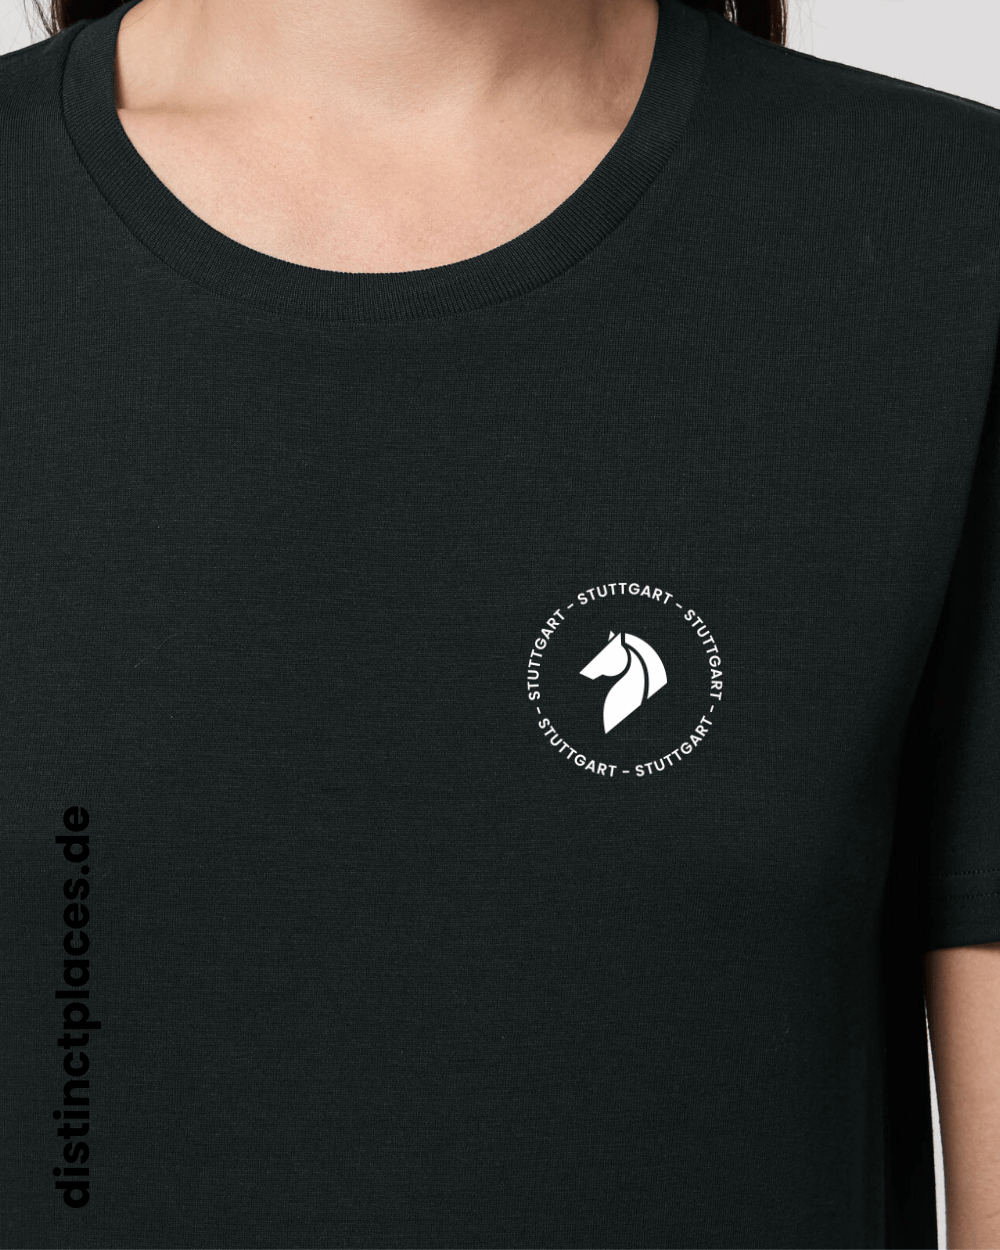 Detailansicht schwarzes fairtrade, vegan und bio-baumwoll T-Shirt von vorne mit einem minimalistischem weißen Logo, beziehungsweise Wappen und Schriftzug für Stuttgart